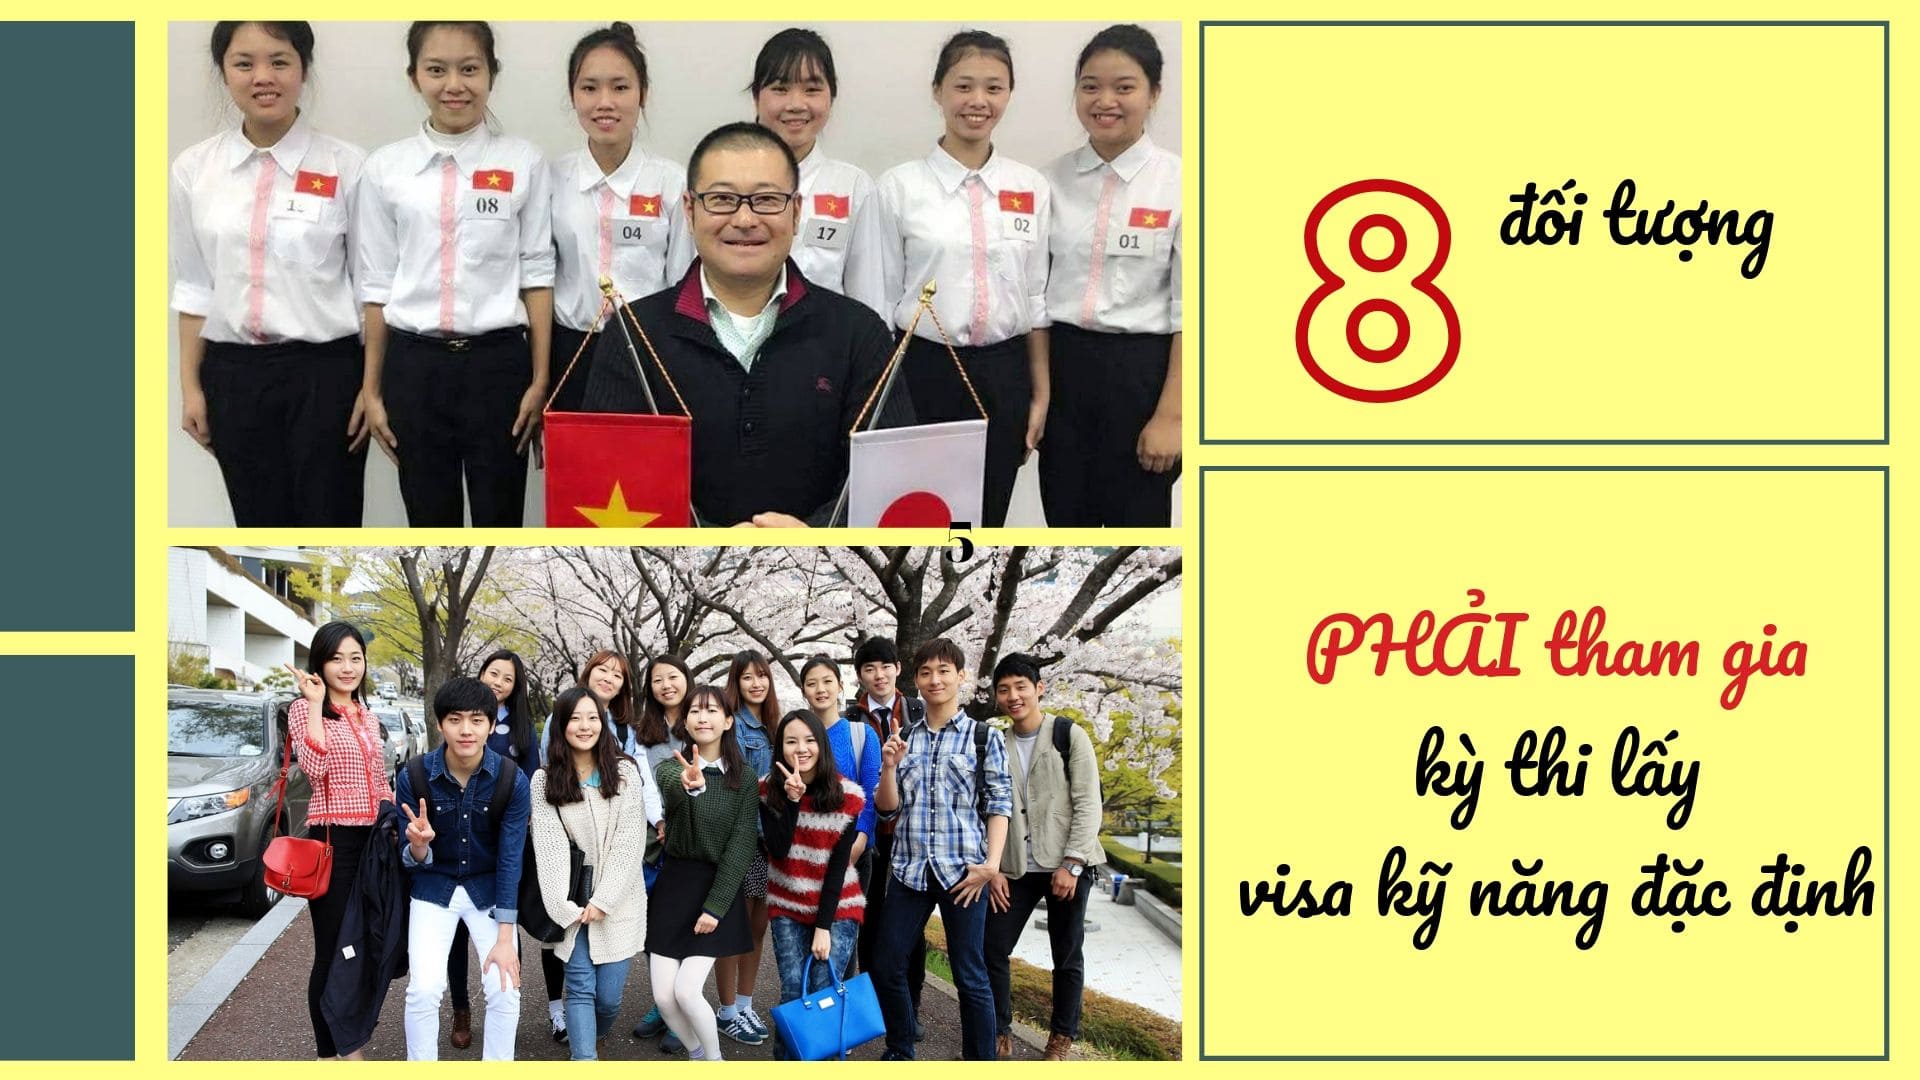 8 đối tượng PHẢI tham gia kỳ thi lấy visa kỹ năng đặc định